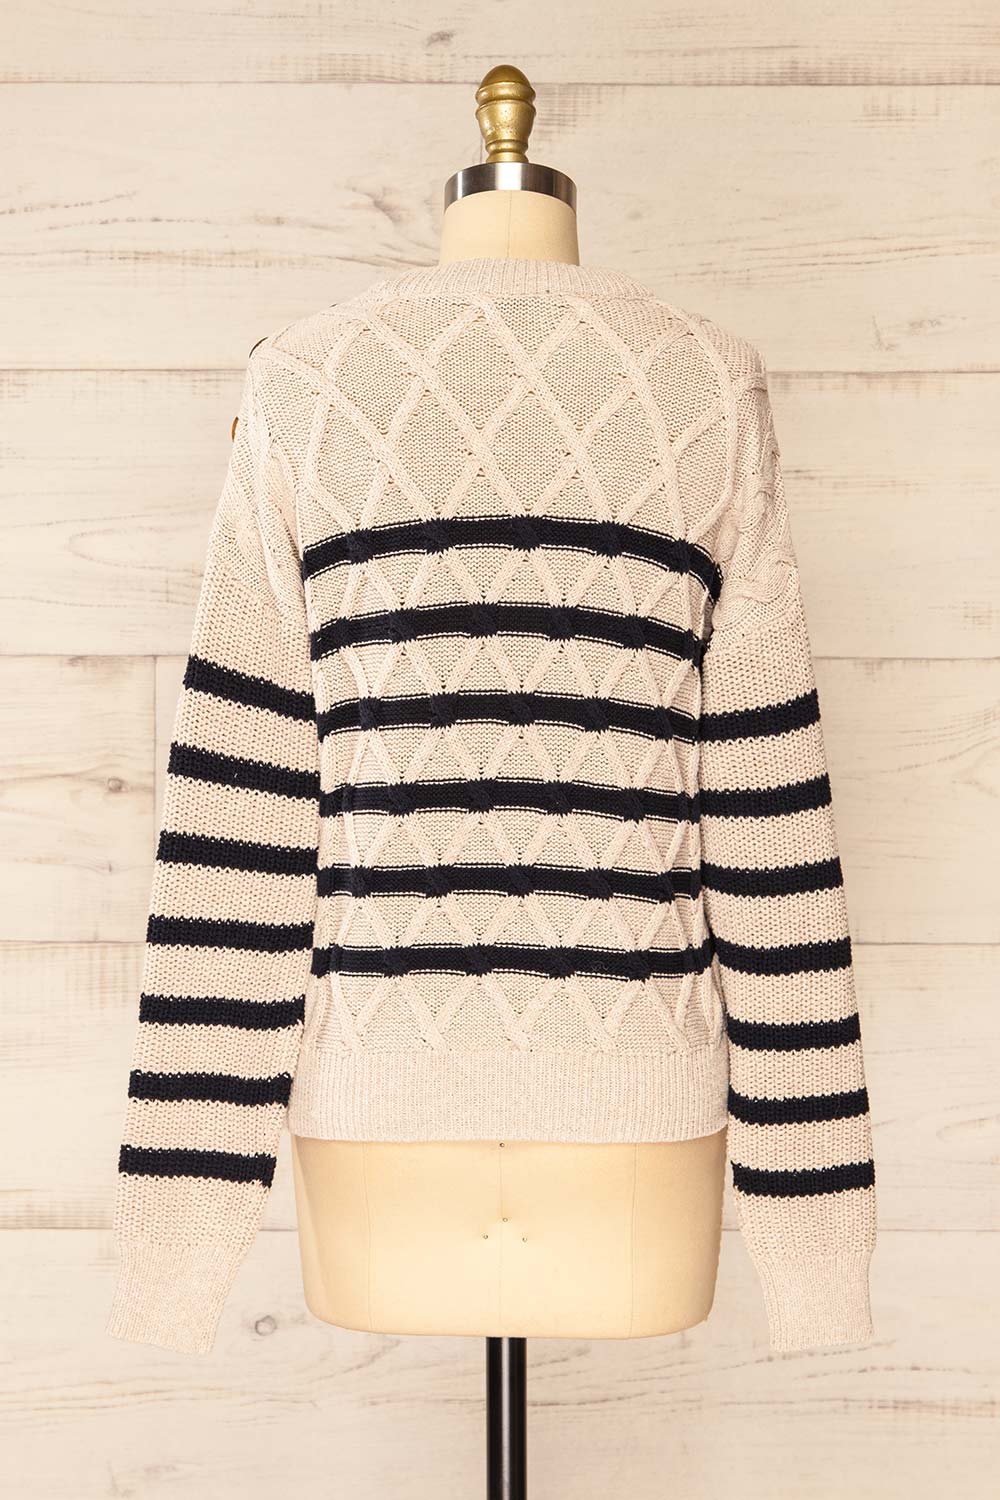 Algesiras Beige Diamond Knit Striped Sweater | La petite garçonne back view